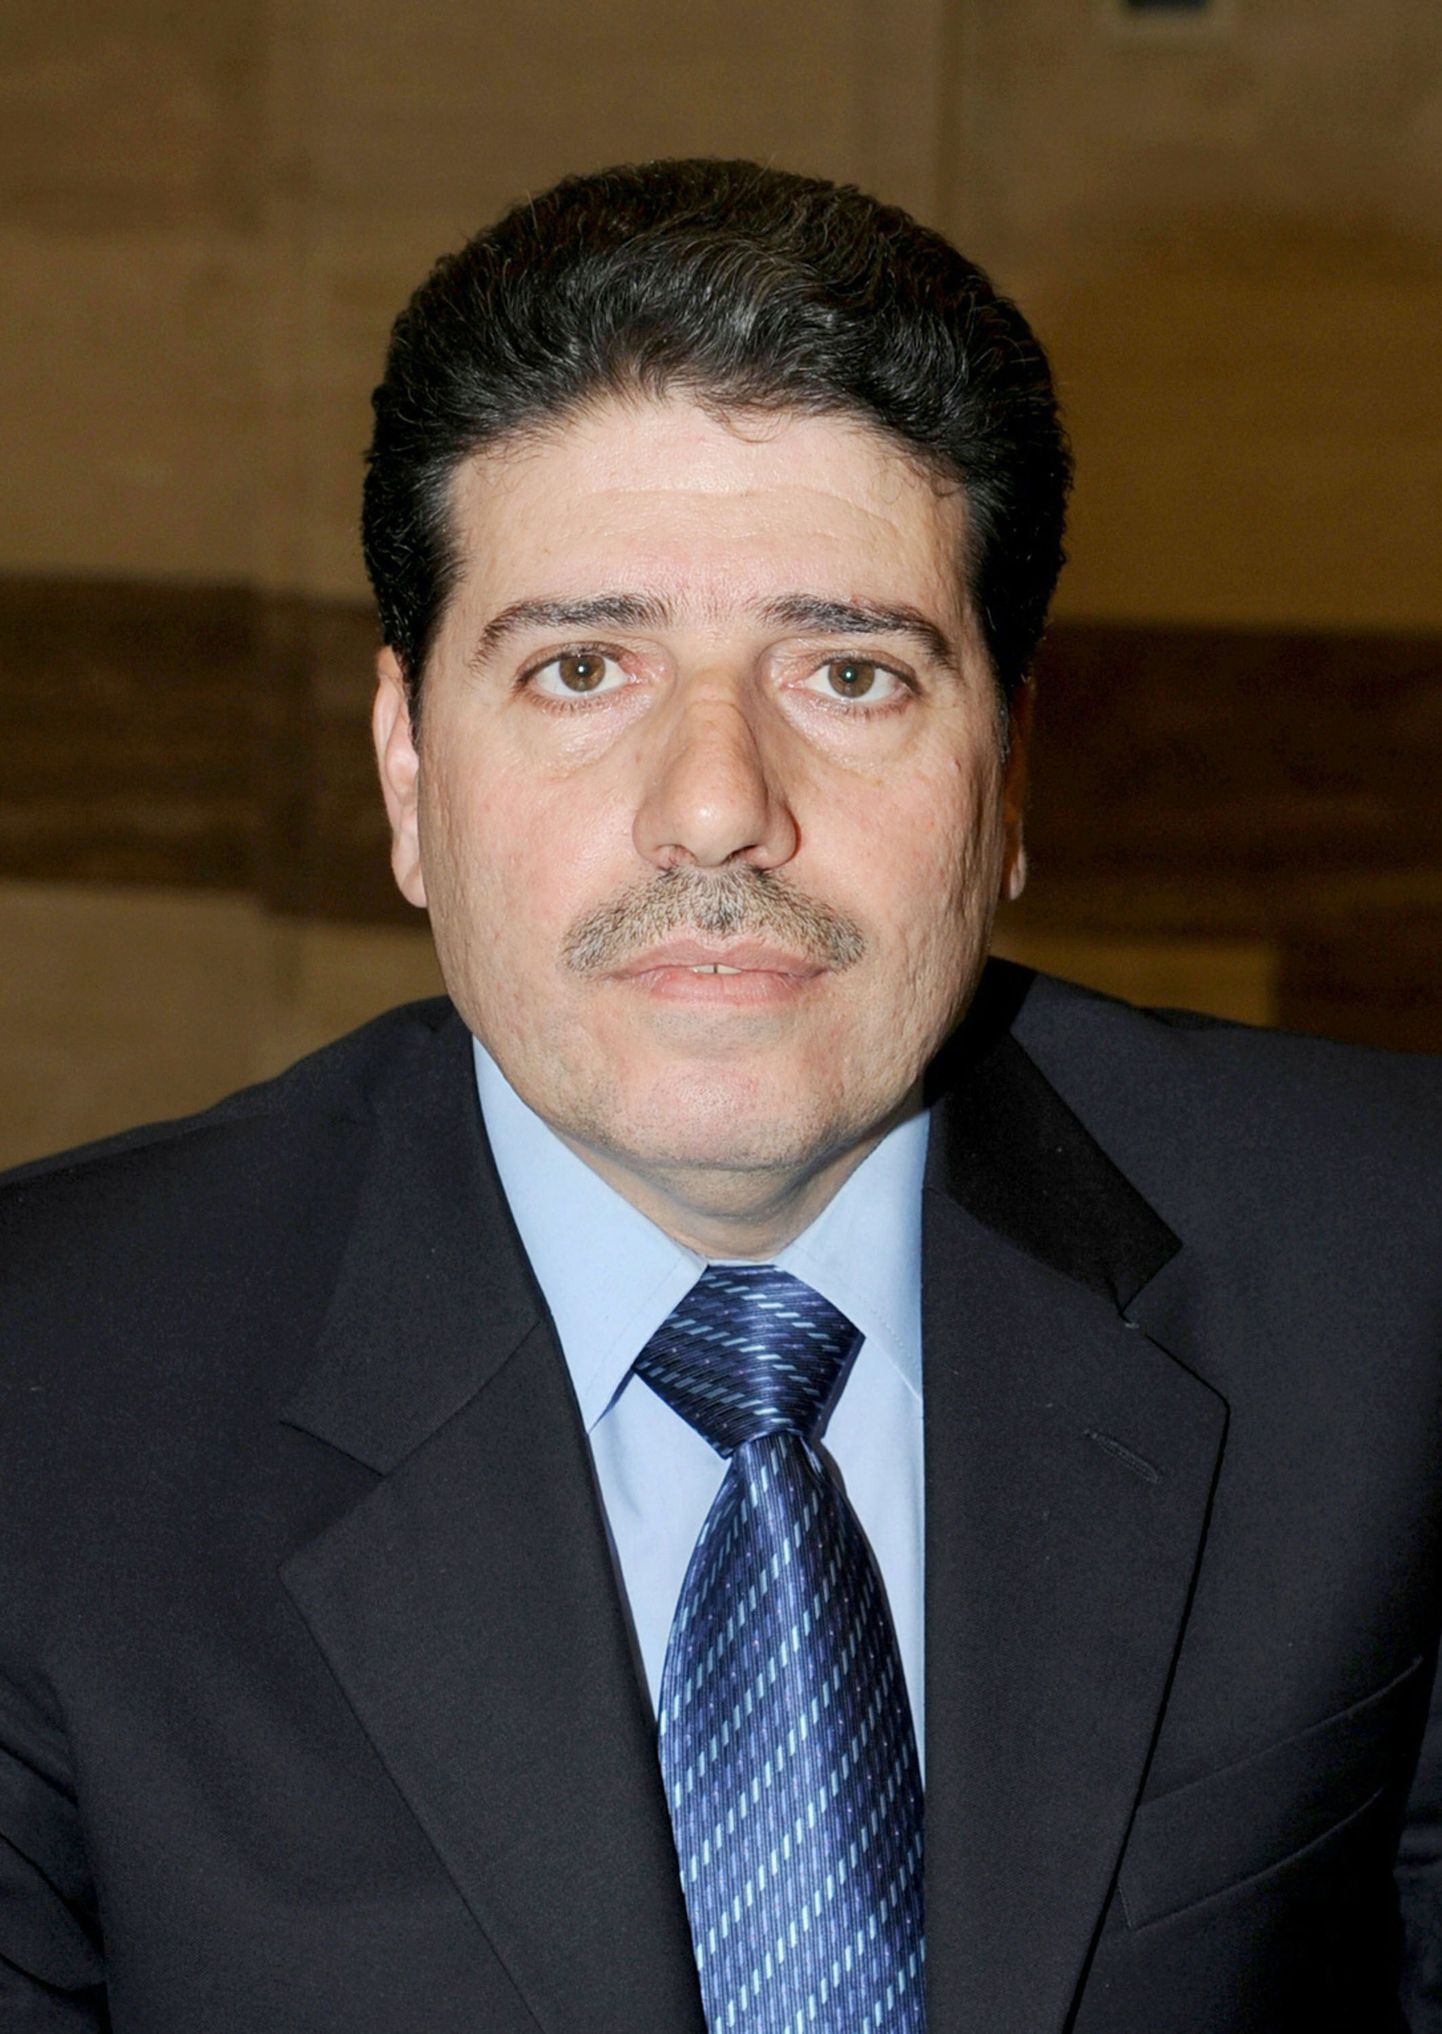 Süüria peaminister Wael al-Halqi.